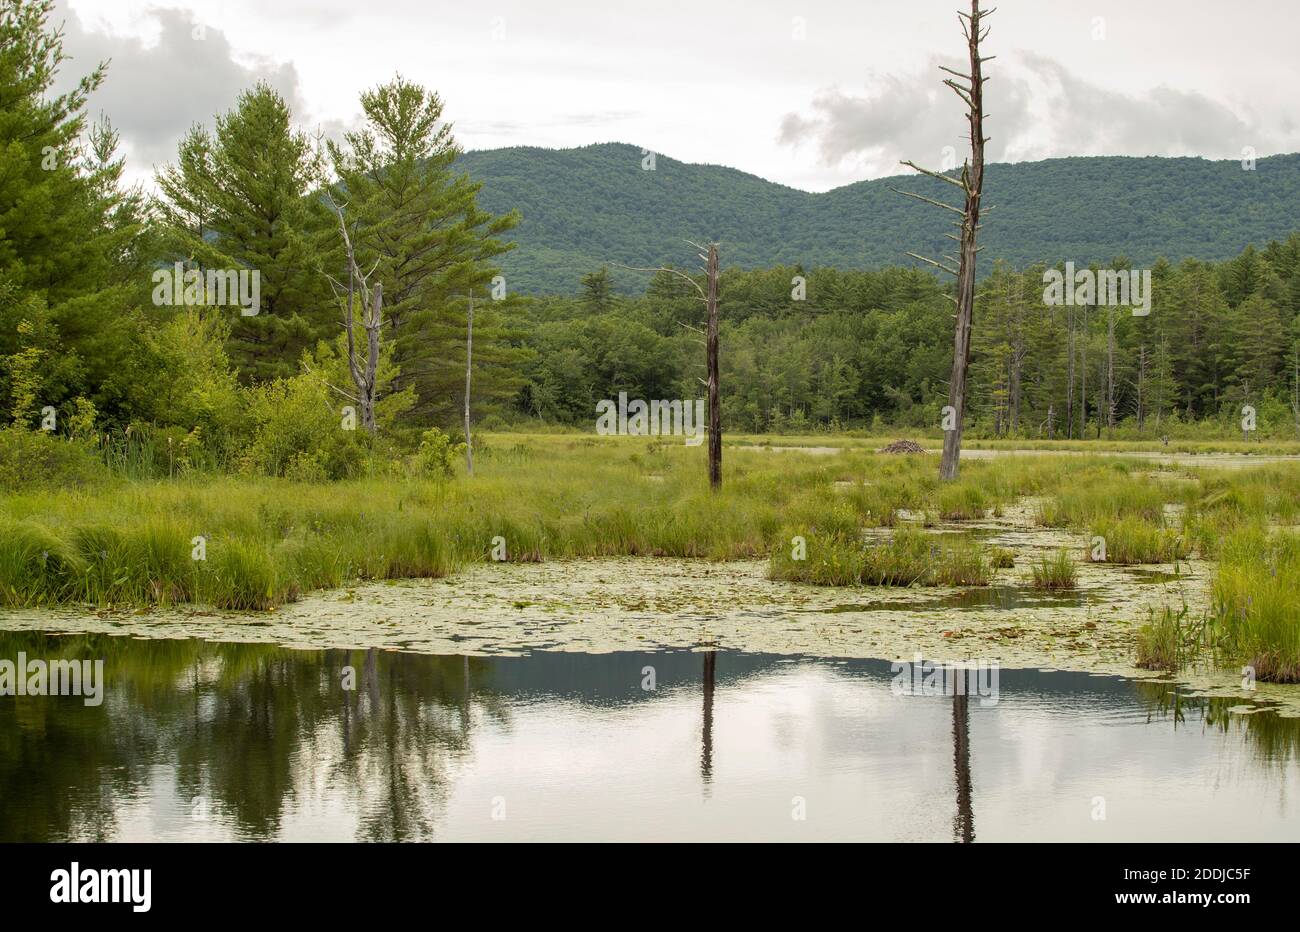 Région des zones humides du nord du New Hampshire. Près de Squam Lake où le film « on Golden Pond » a été filmé. Situé entre Holderness et Sandwich, NH. Banque D'Images